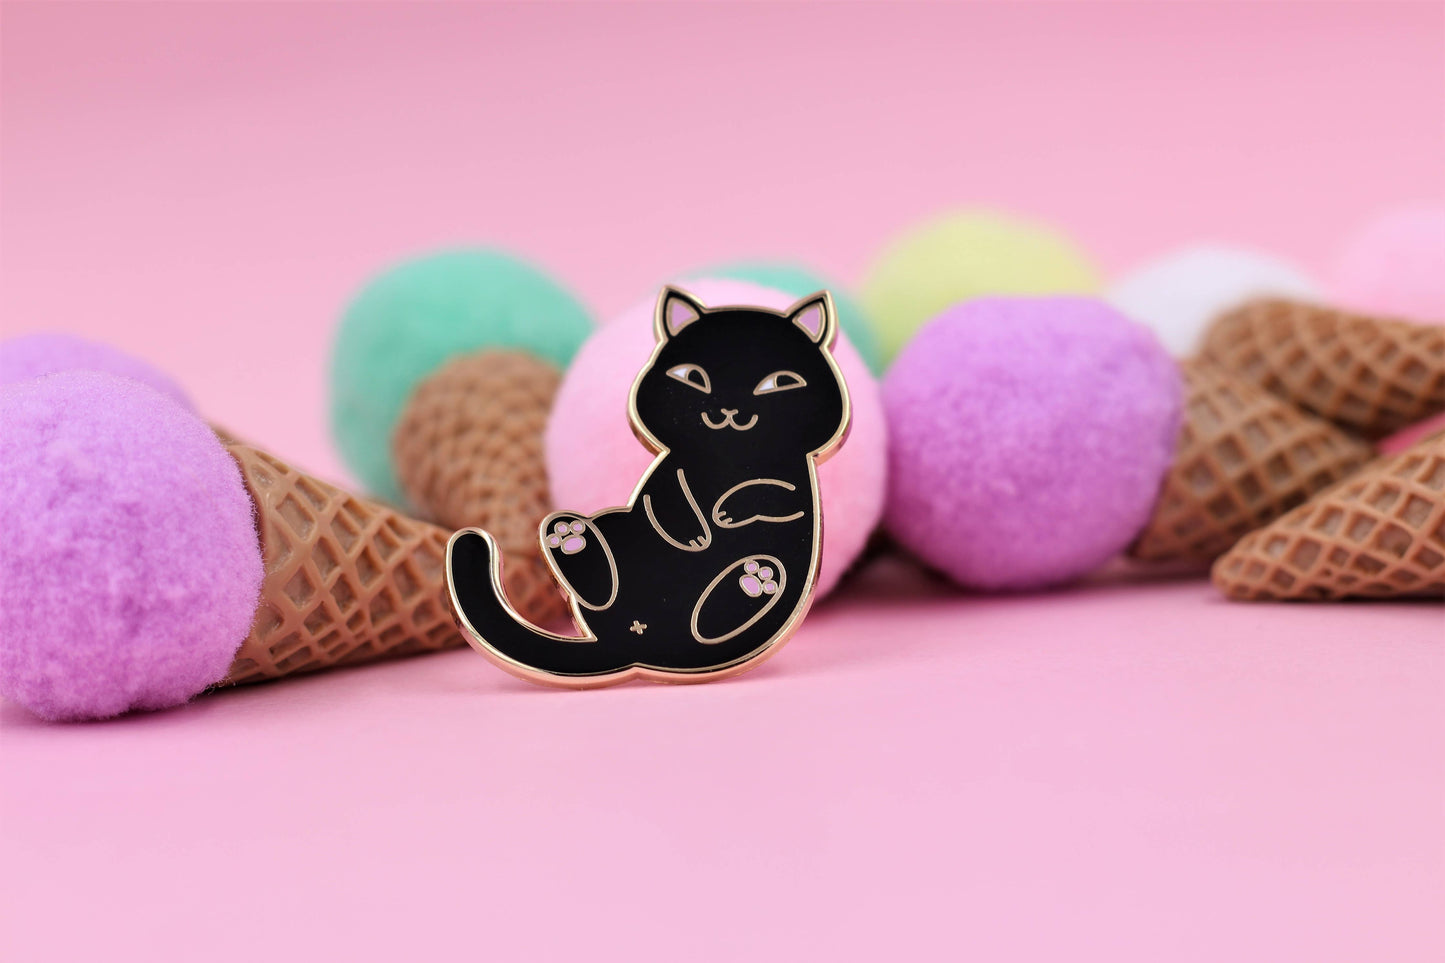 Playful Cat Enamel Pin - Cute & Funny Cat Lapel Pin